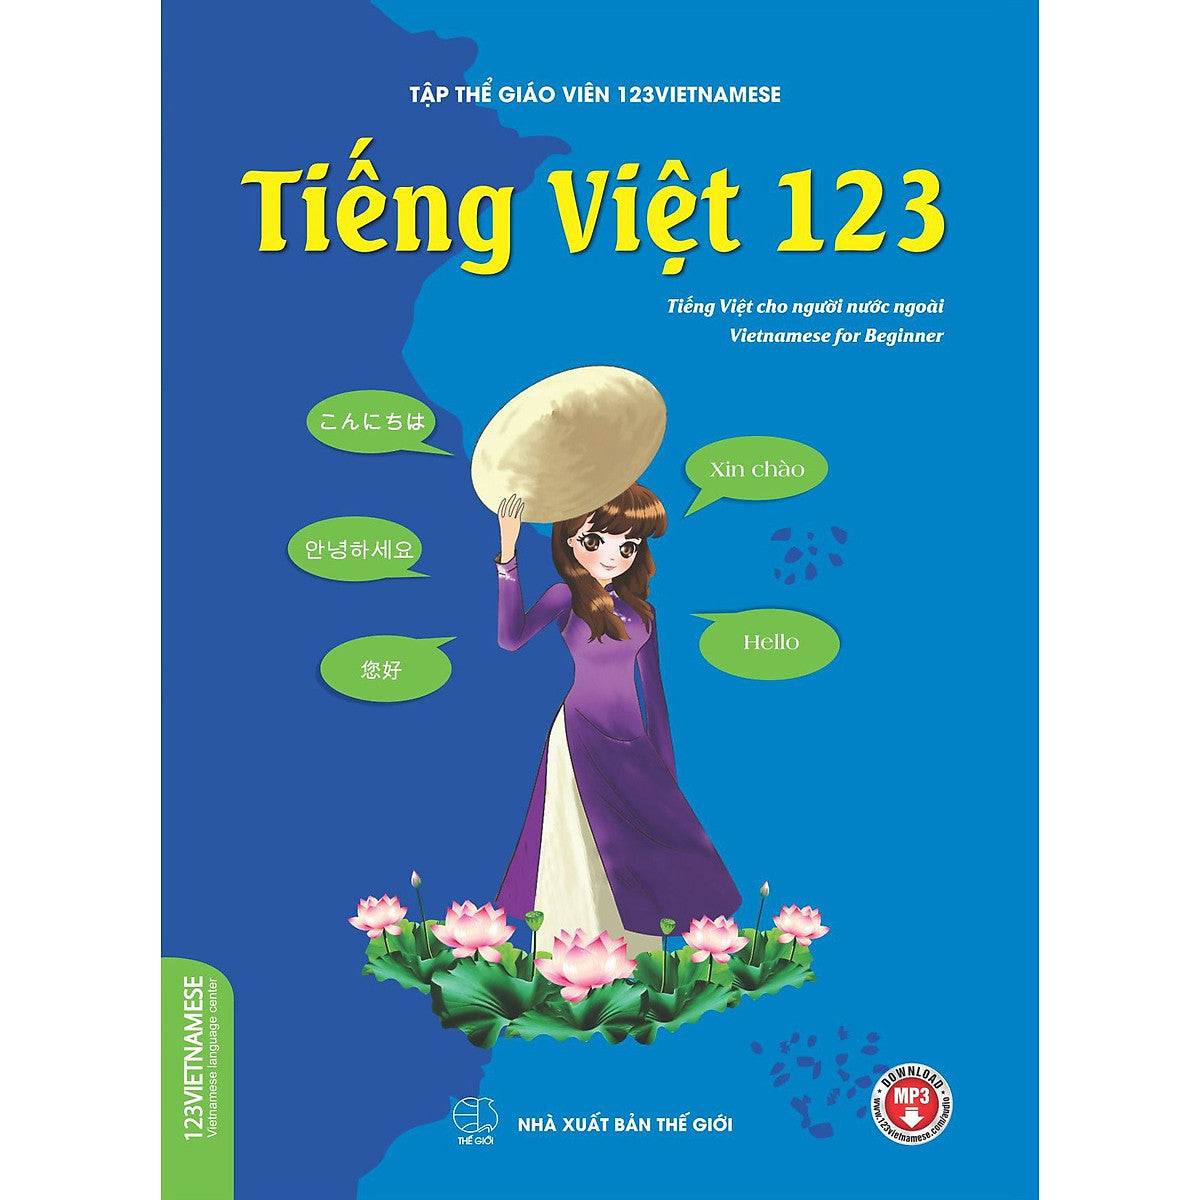 Tiếng Việt 123 (Tiếng Việt Dành Cho Người Nước Ngoài) Trình Độ A